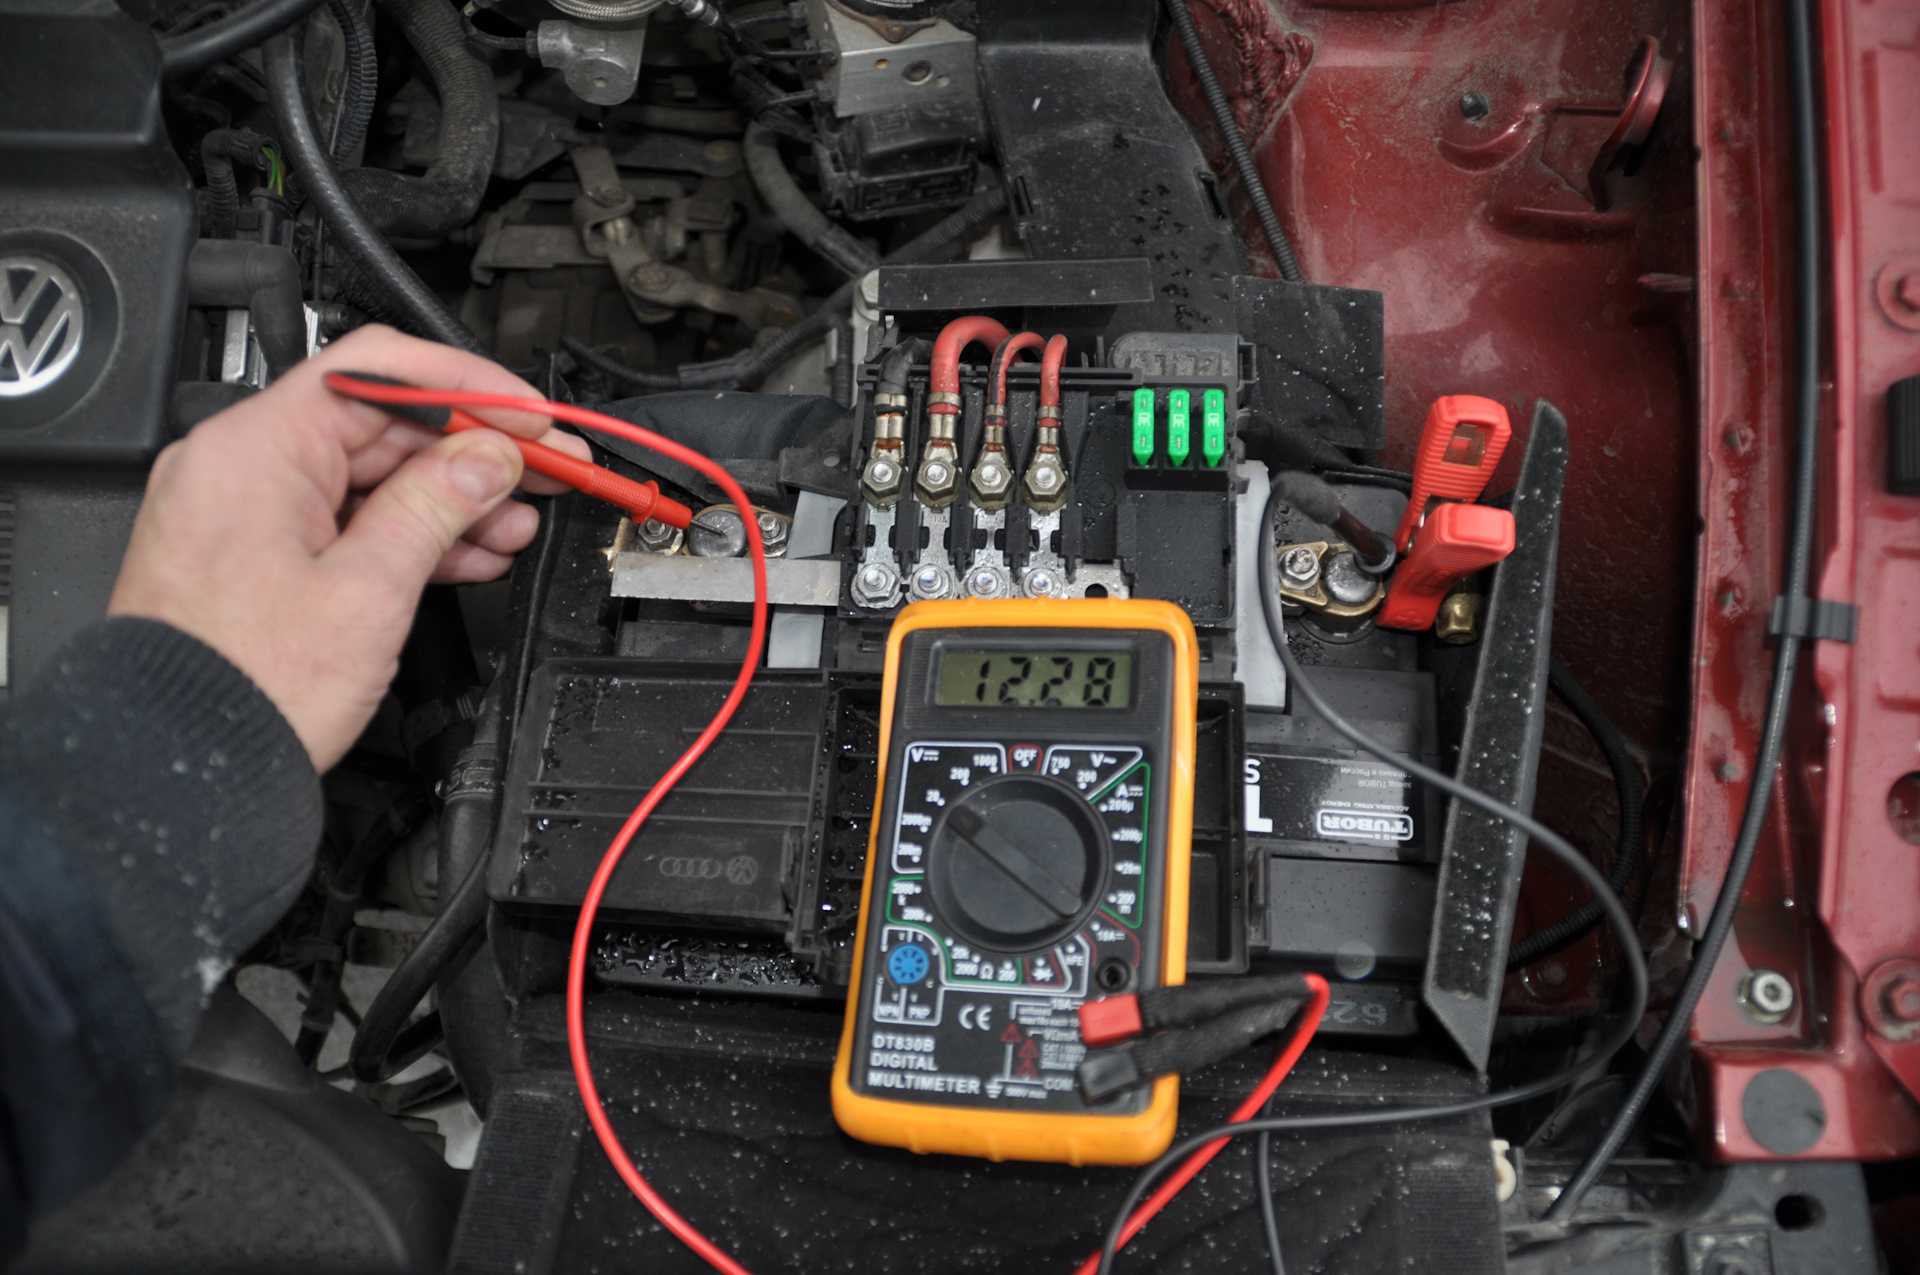 Как проверить утечку тока на автомобиле мультиметром